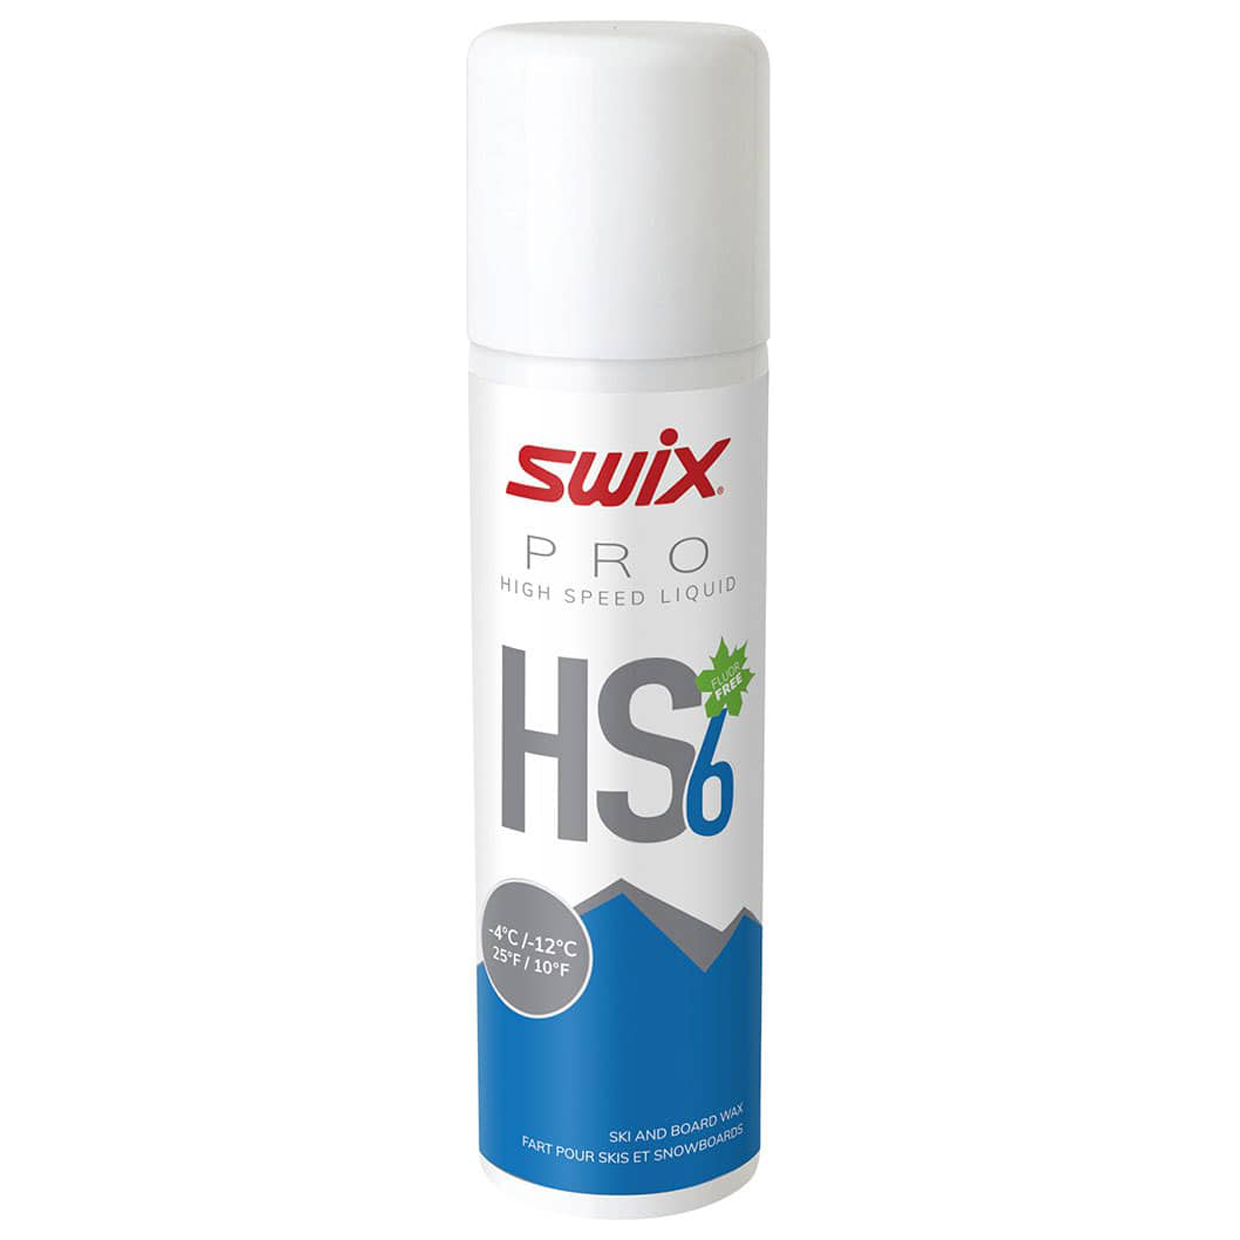 Spray Skiwachs HS6 Liquid -4°C/-12°C